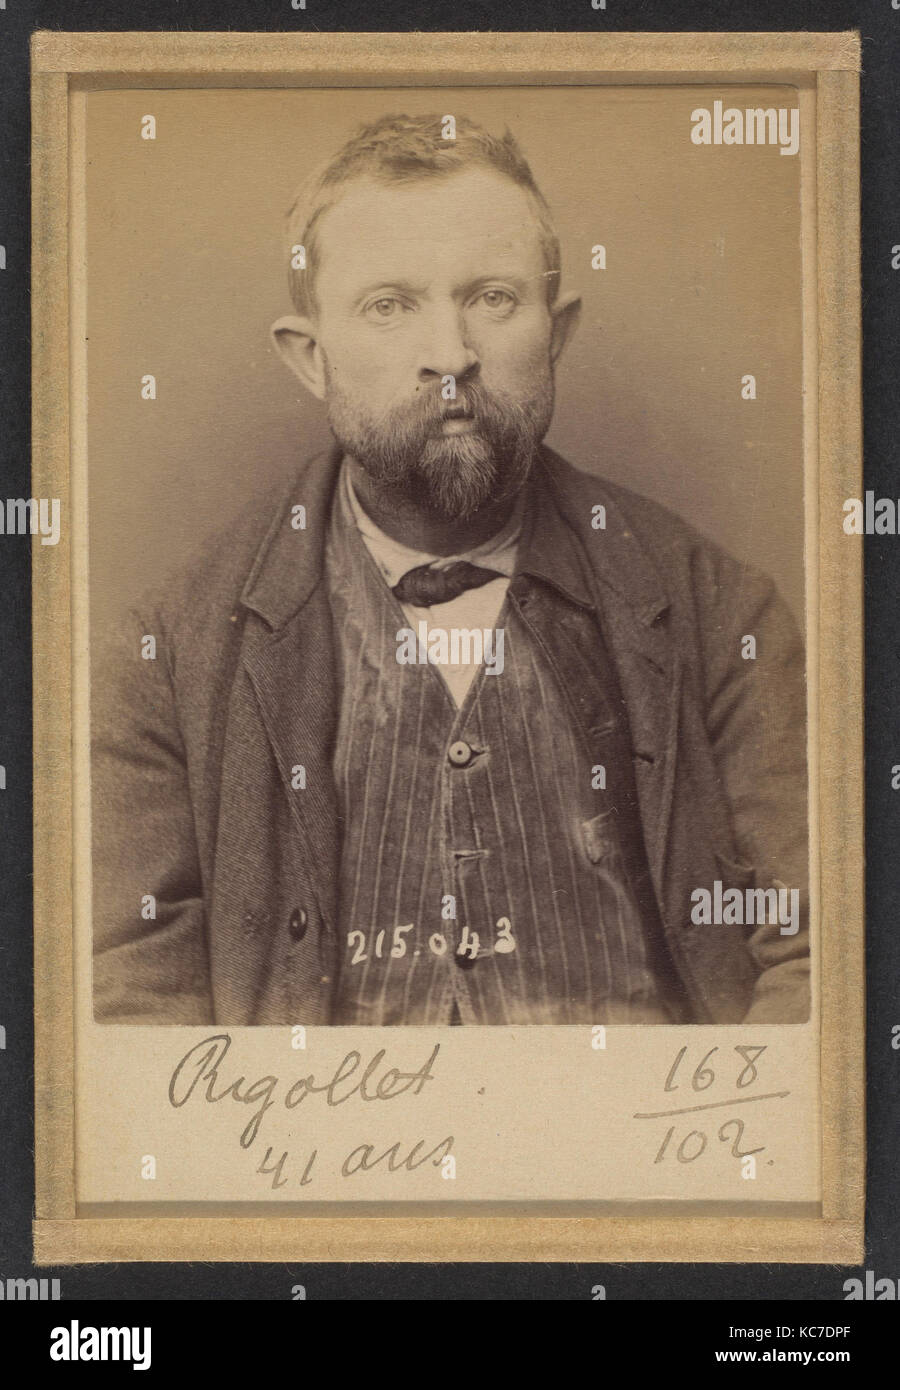 Rigollet. Alexandre. 41 ans, né dans le Loir-et-Cher. Terrassier. Anarchiste., Alphonse Bertillon, 1894 Stock Photo